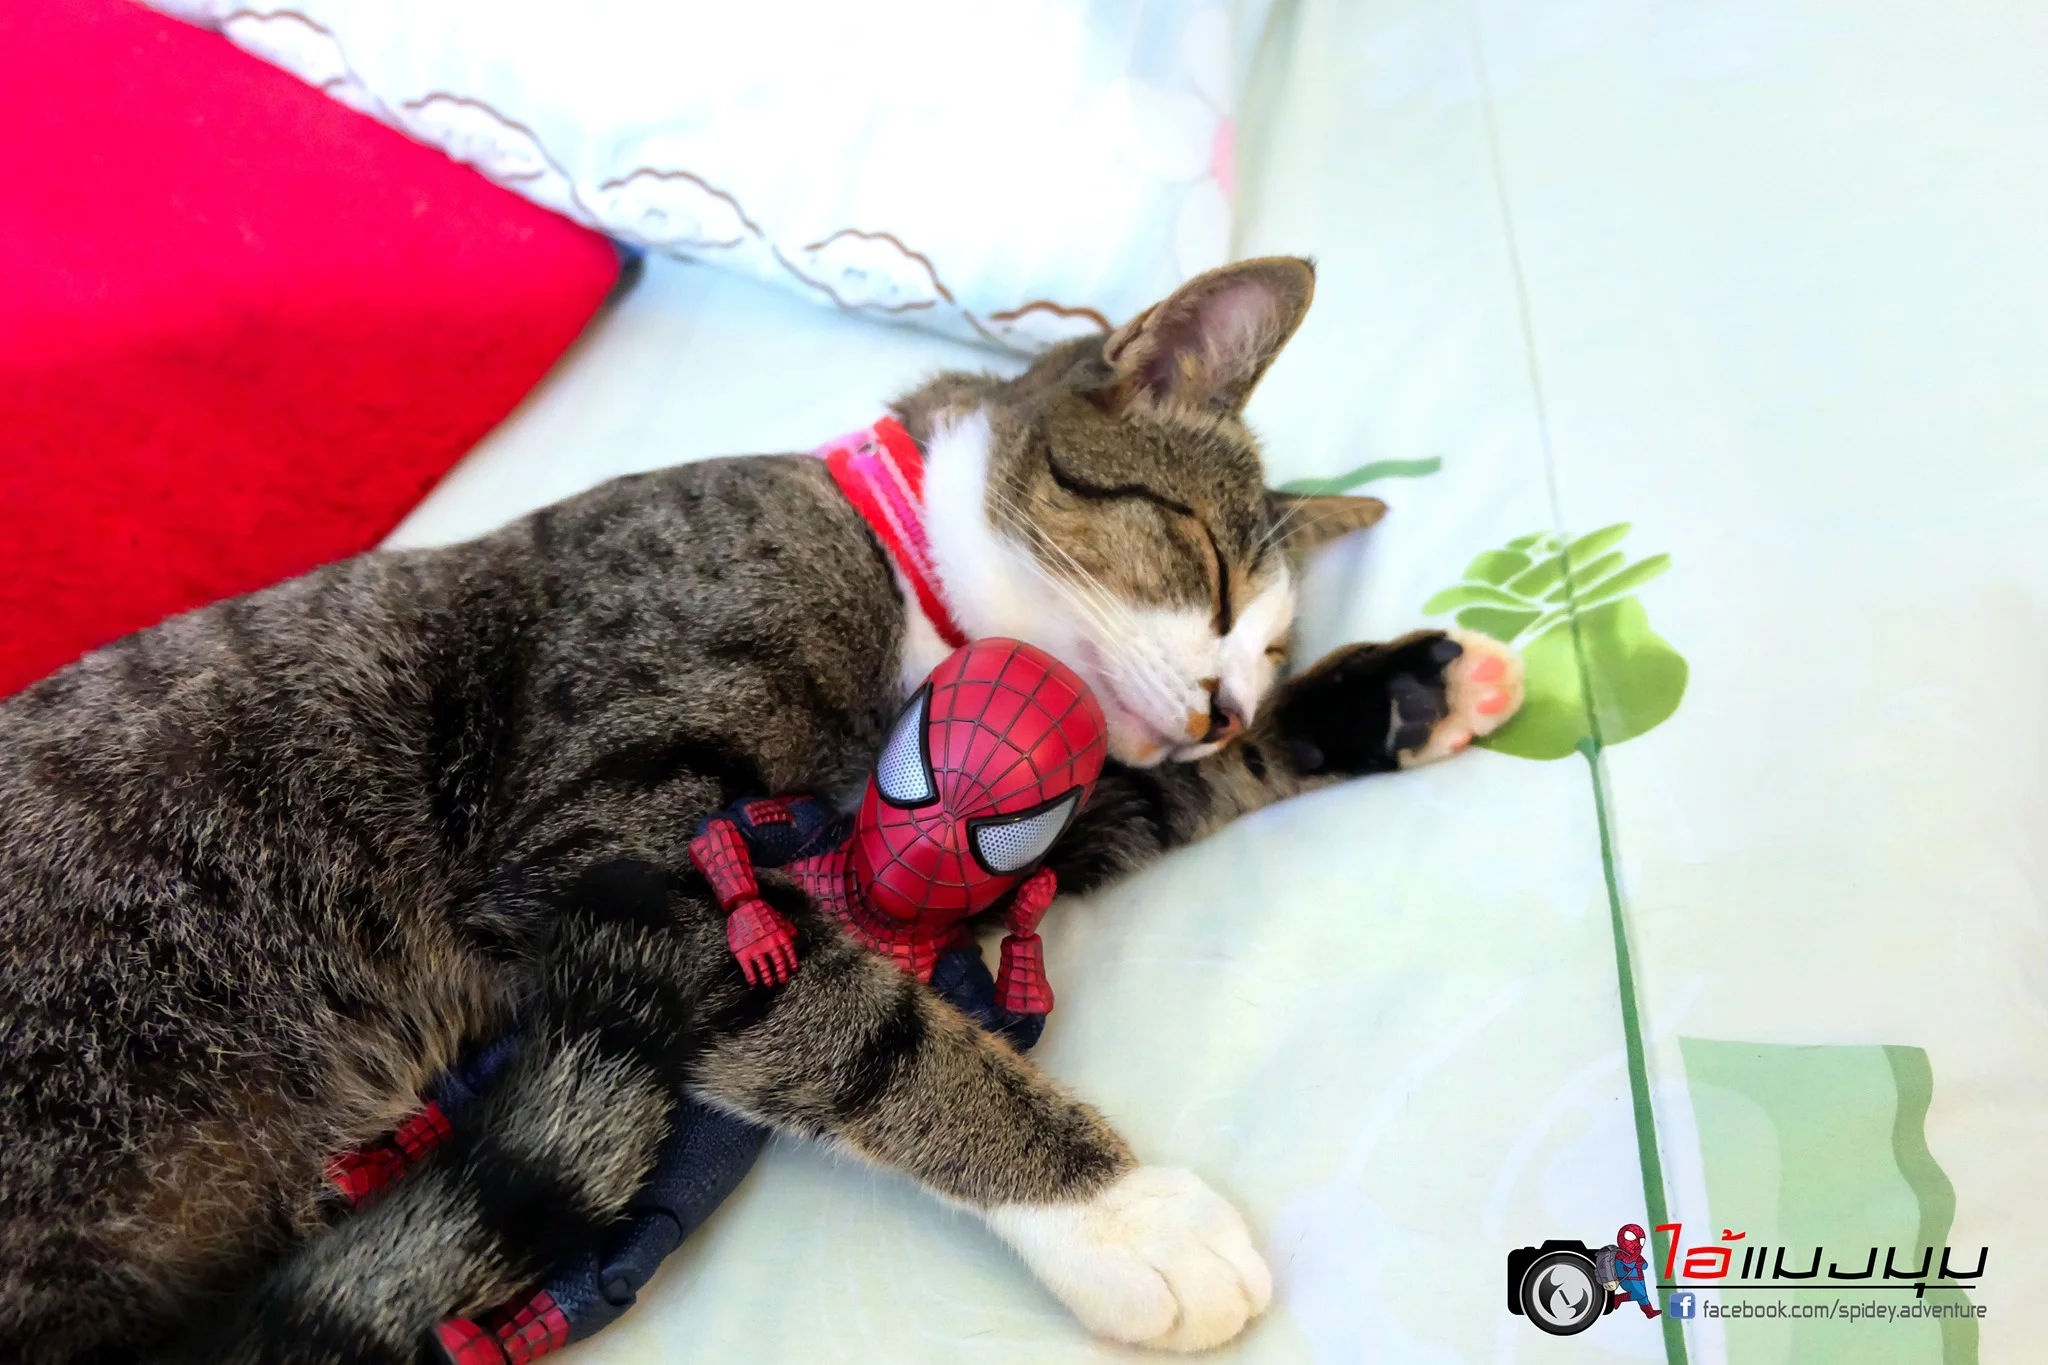 Художник додав до фото з котиками зображення Людини-павука – це виглядає дуже смішно - фото 459375